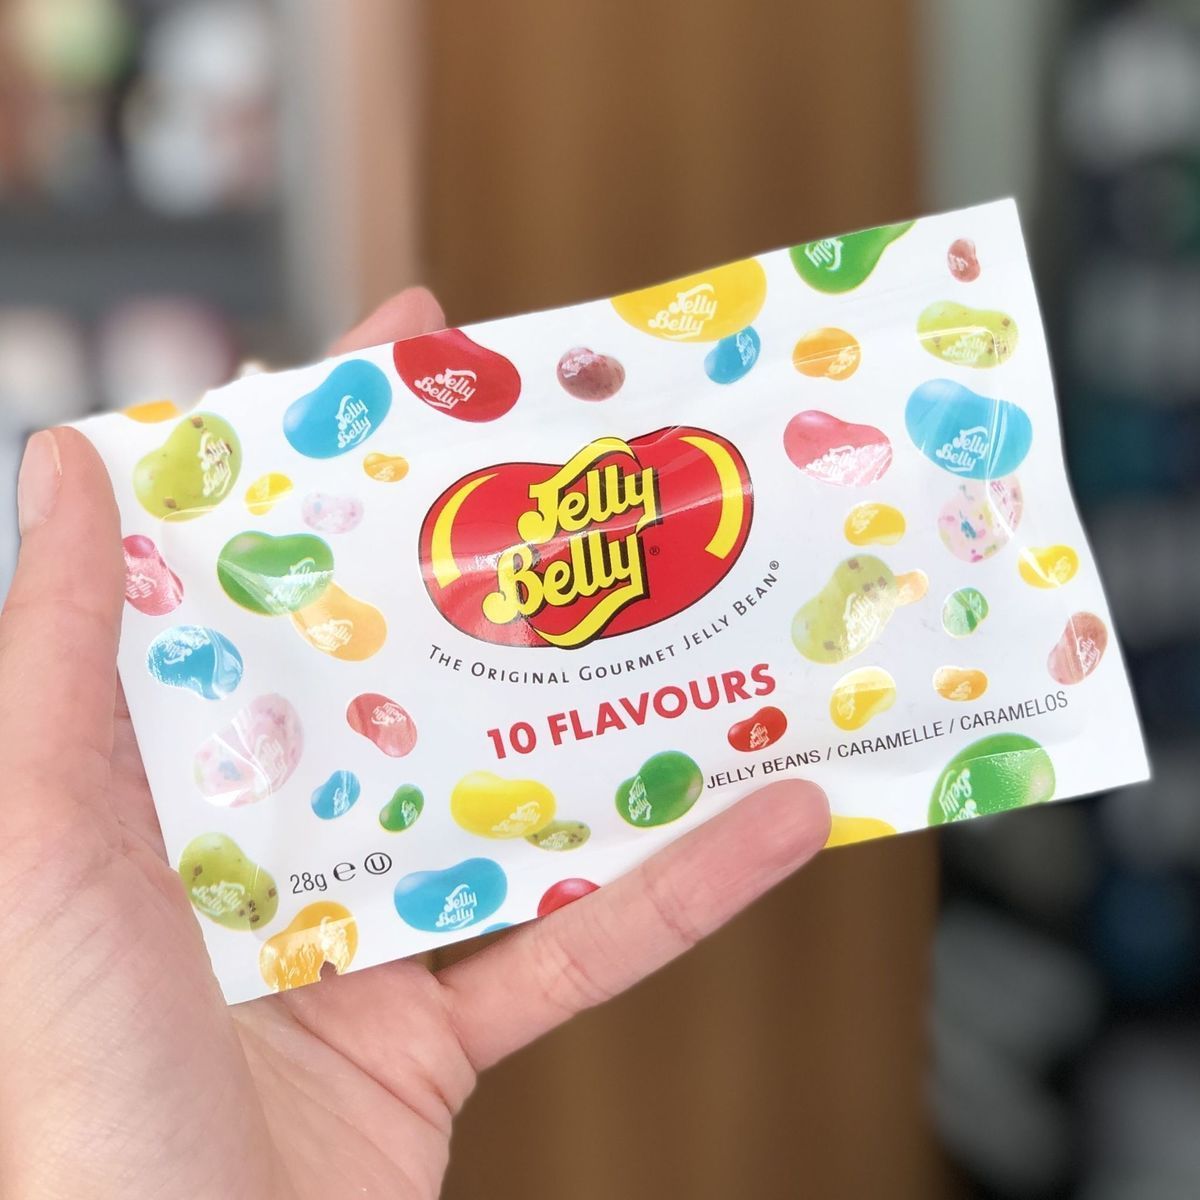 Драже жевательное "Jelly Belly" ассорти 10 вкусов 28г пакет